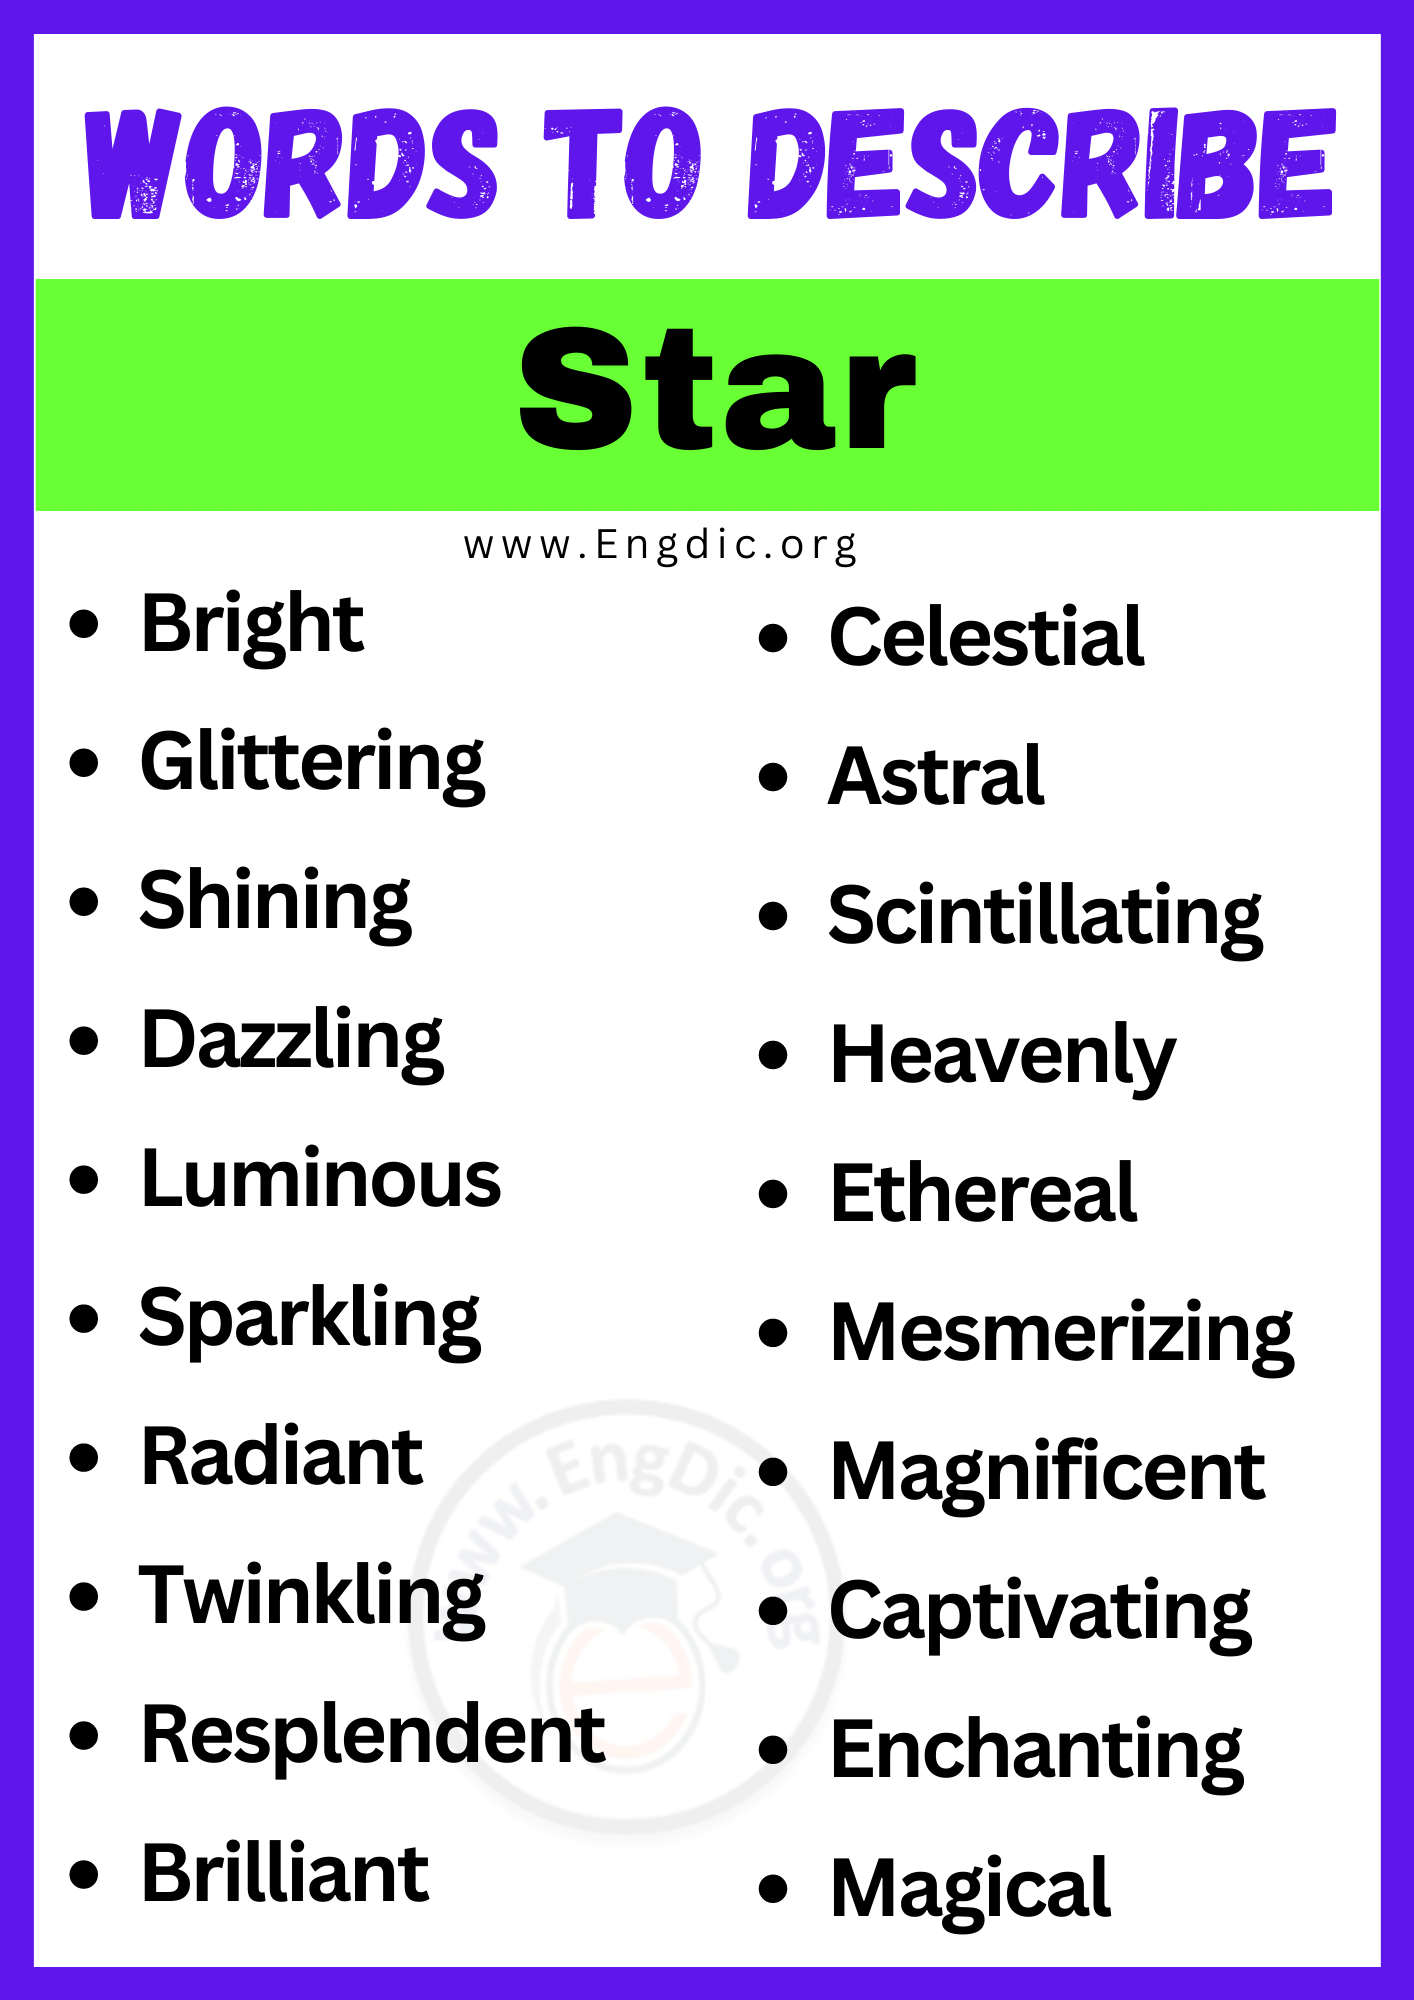 Words to Describe a Star